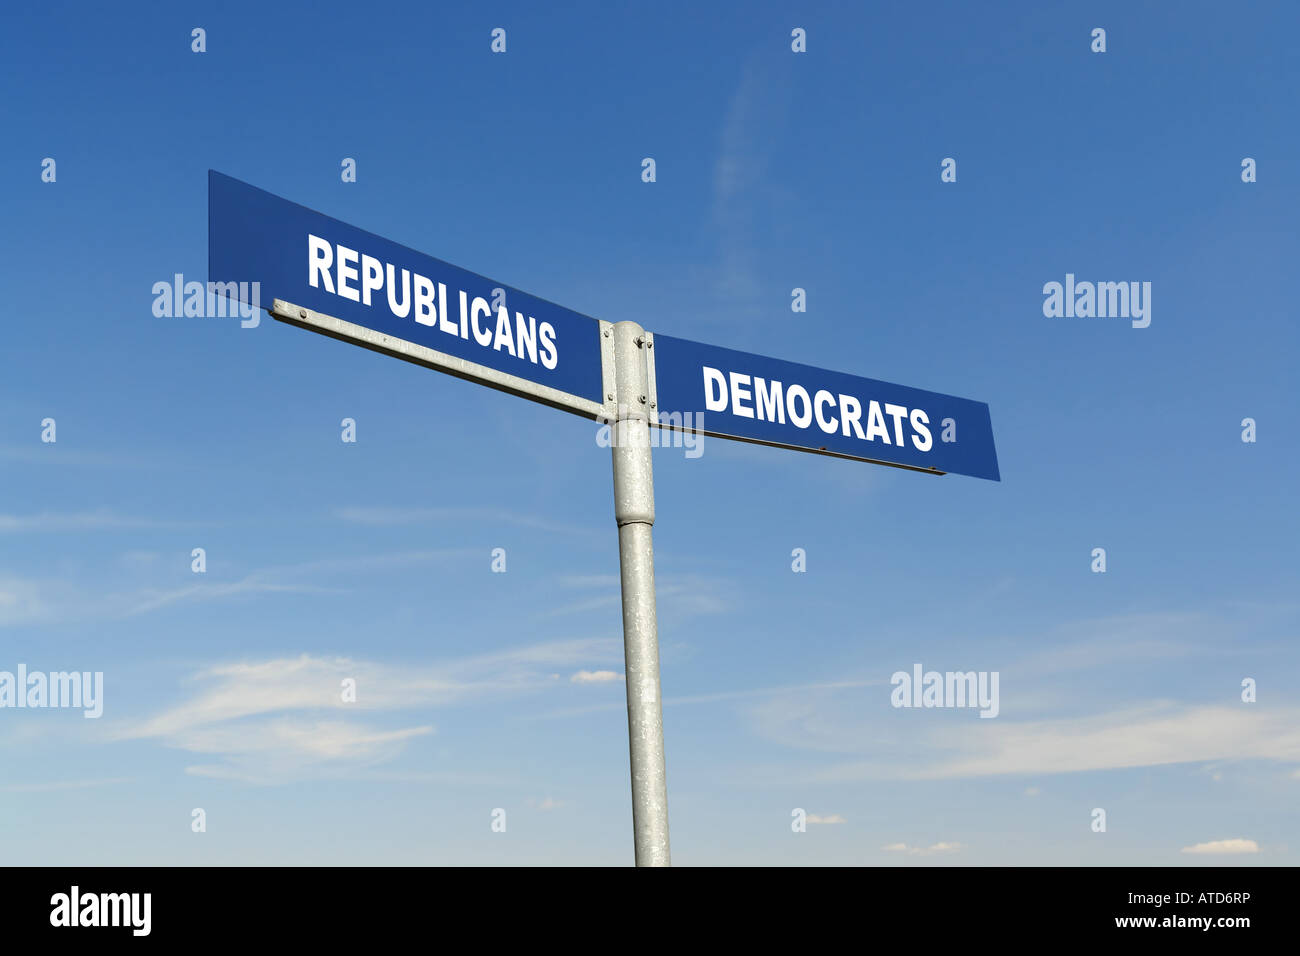 Zwei-Wege-Metall Wegweiser zeigt Republikaner und Demokraten Parteien über blauen Himmel Stockfoto